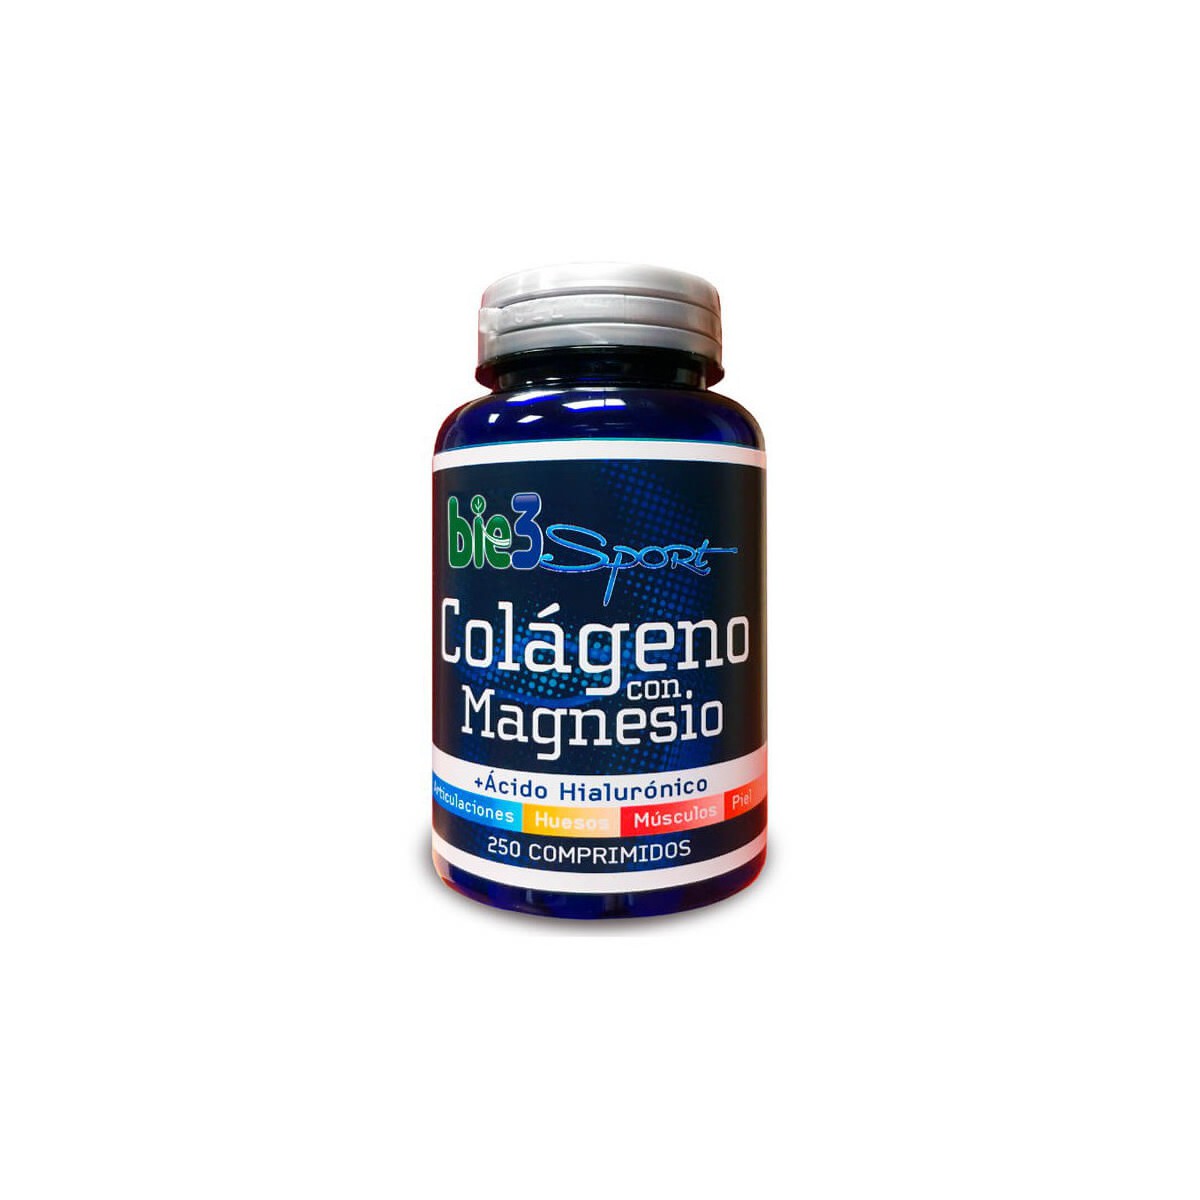 Bie3 Colágeno con Magnesio y Ácido Hialurónico 250 comprimidos